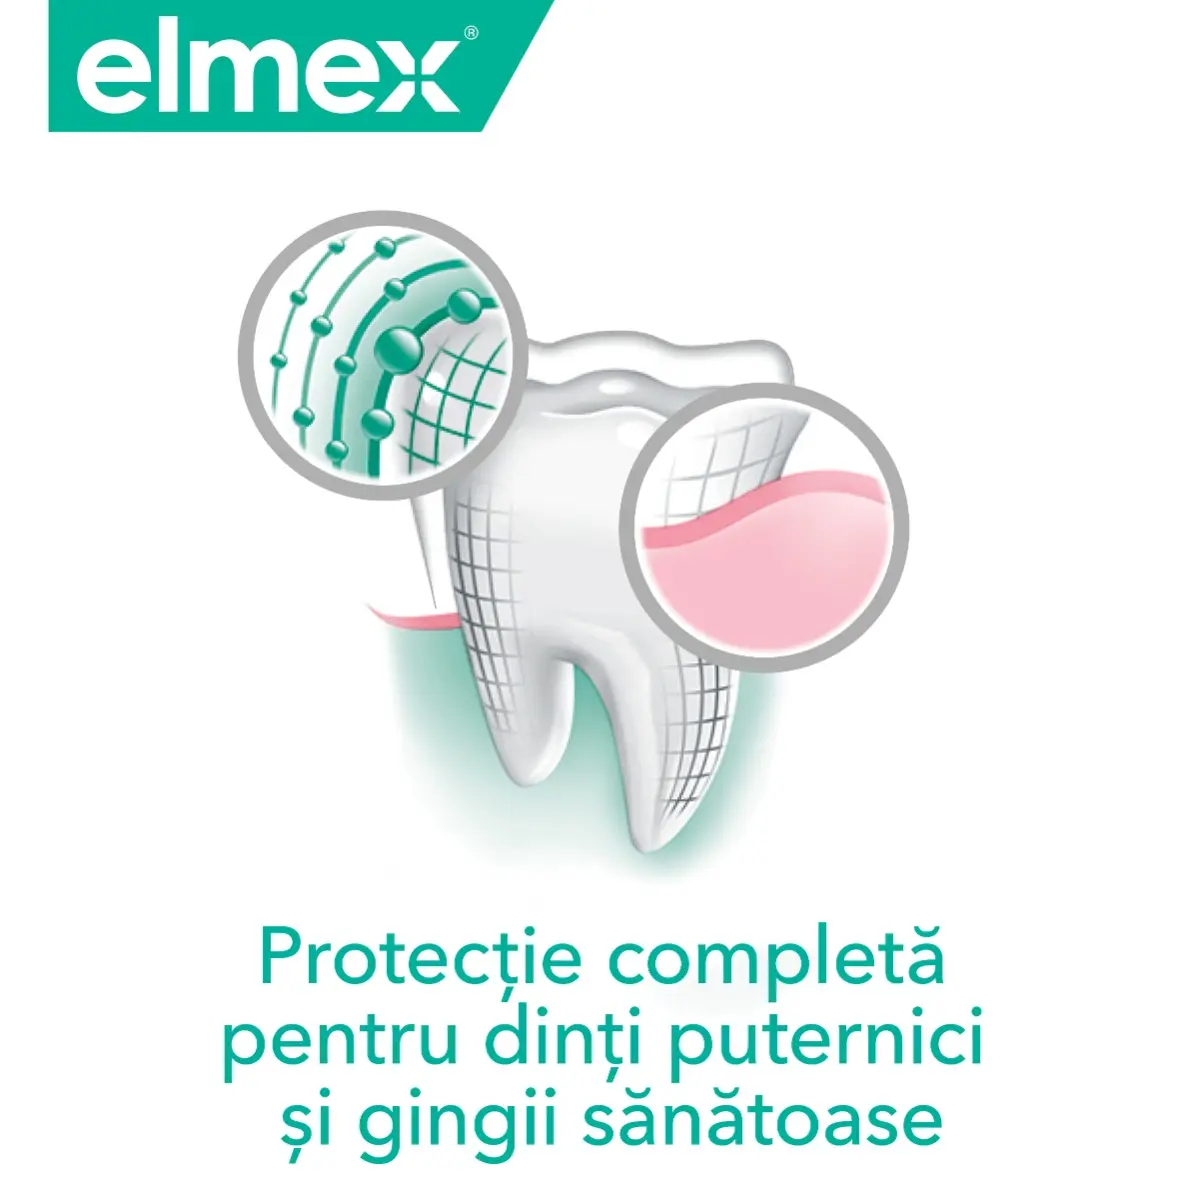 Pasta de dinti elmex Sensitive Plus Complete Protection, pentru dinti sensibili, 75 ml